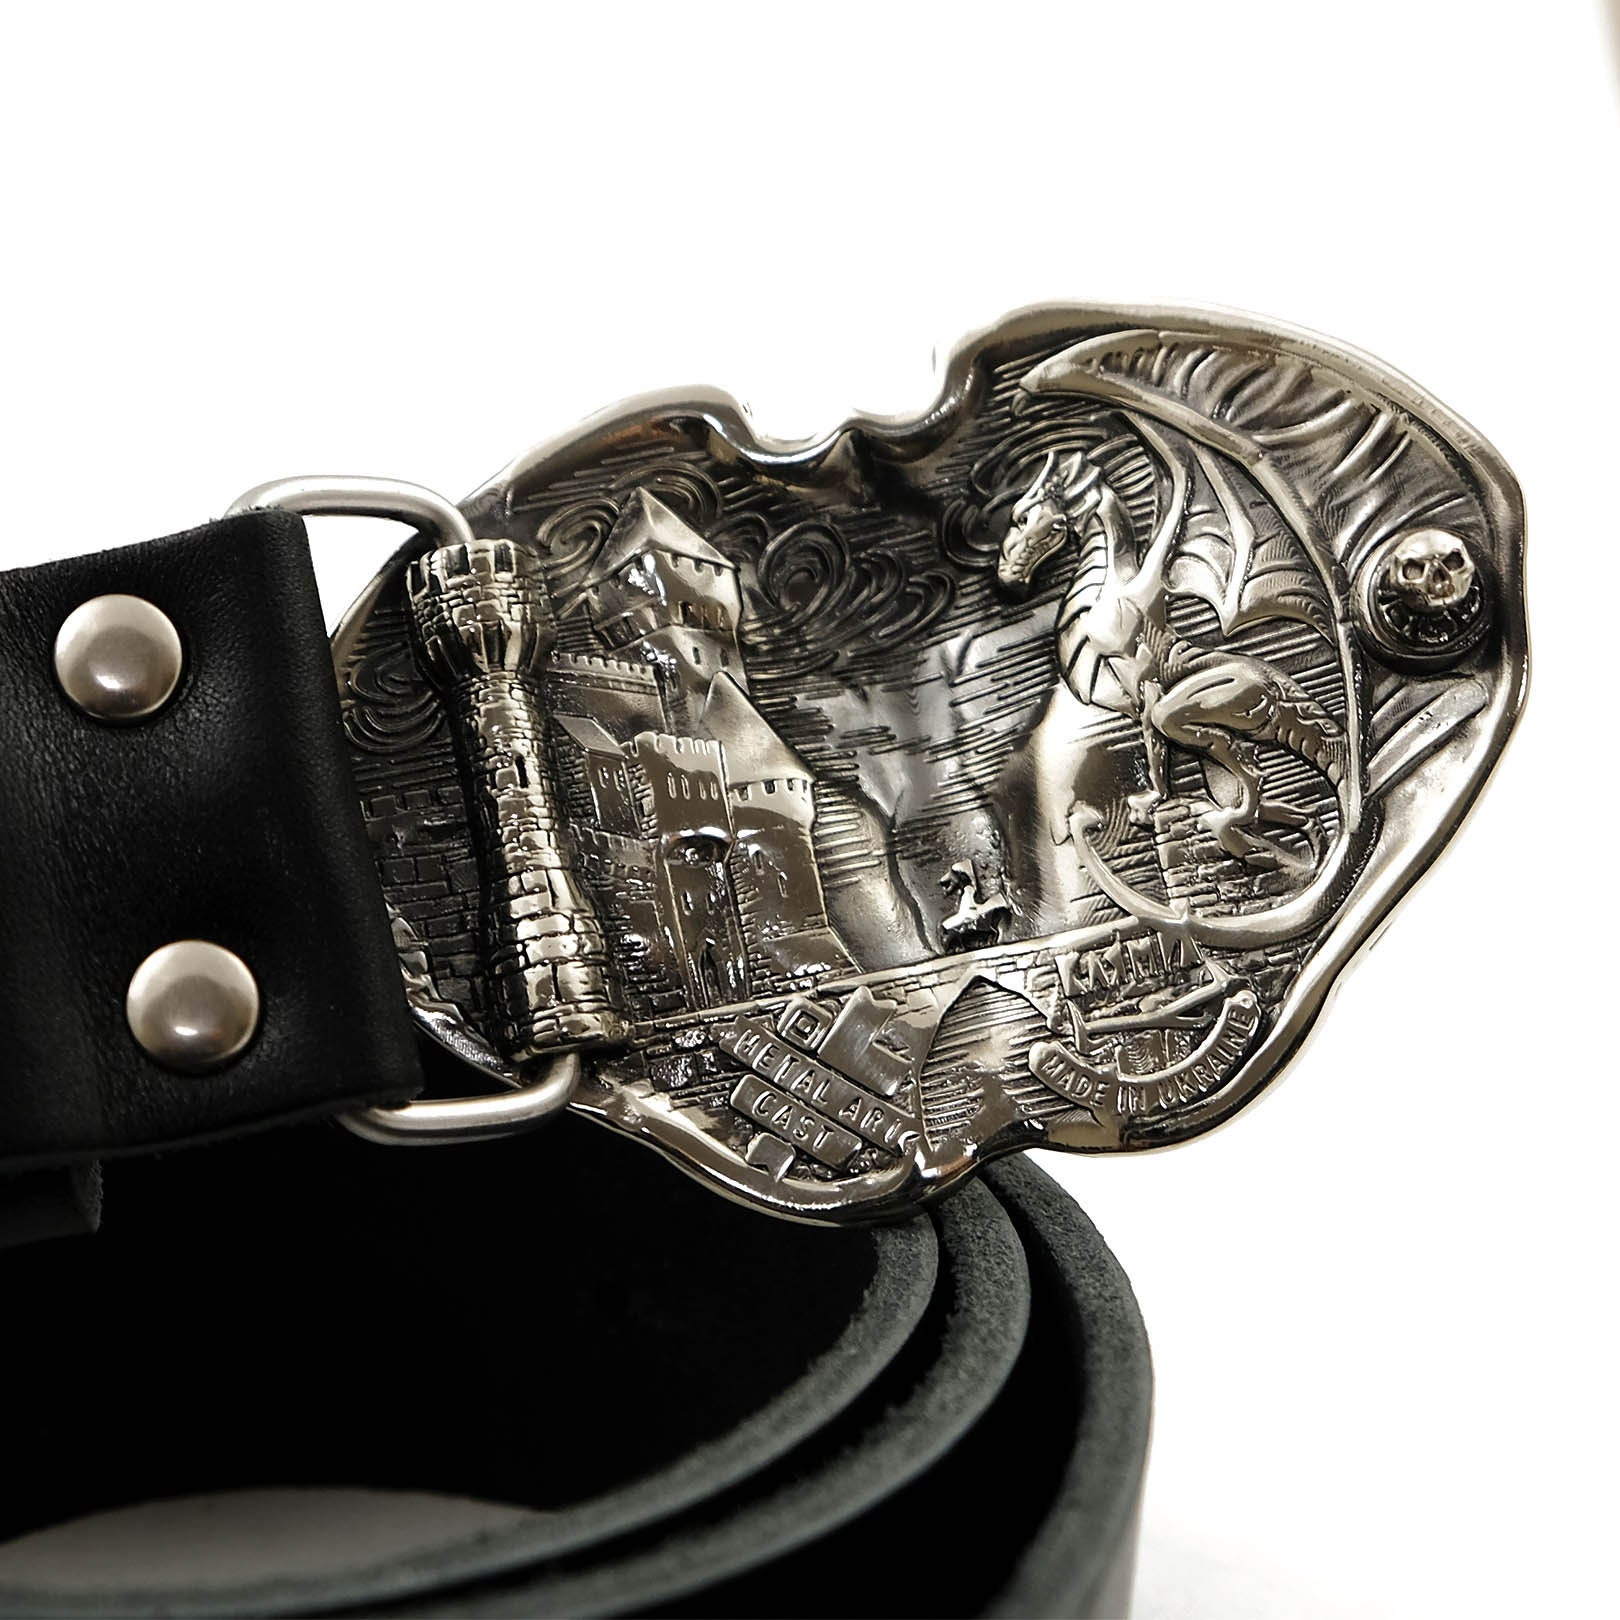 Boucle de ceinture de tête de dragon sur la ceinture en cuir - Etsy France